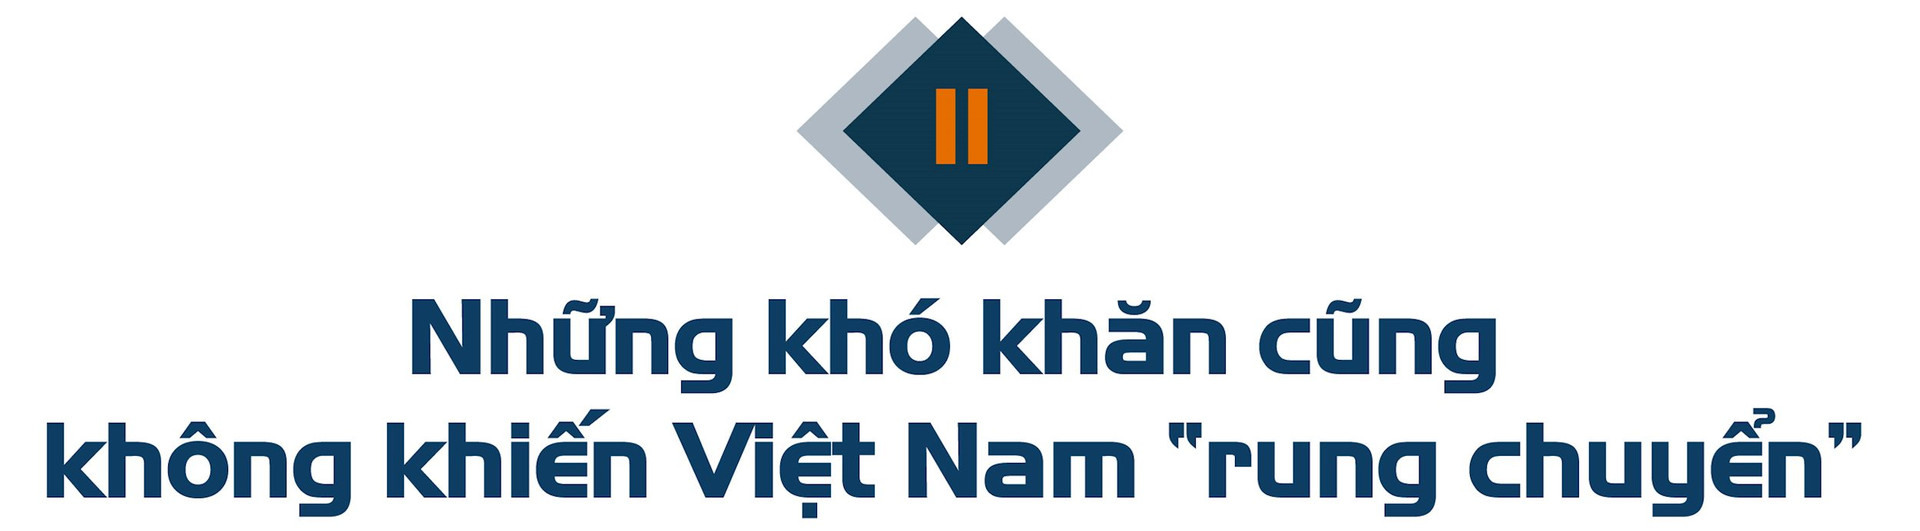 Sếp Mirae Asset Securities: Việt Nam là một trong những nơi đáng để đầu tư nhất, thị trường đã chạm đáy và sẽ sớm khởi sắc - Ảnh 4.